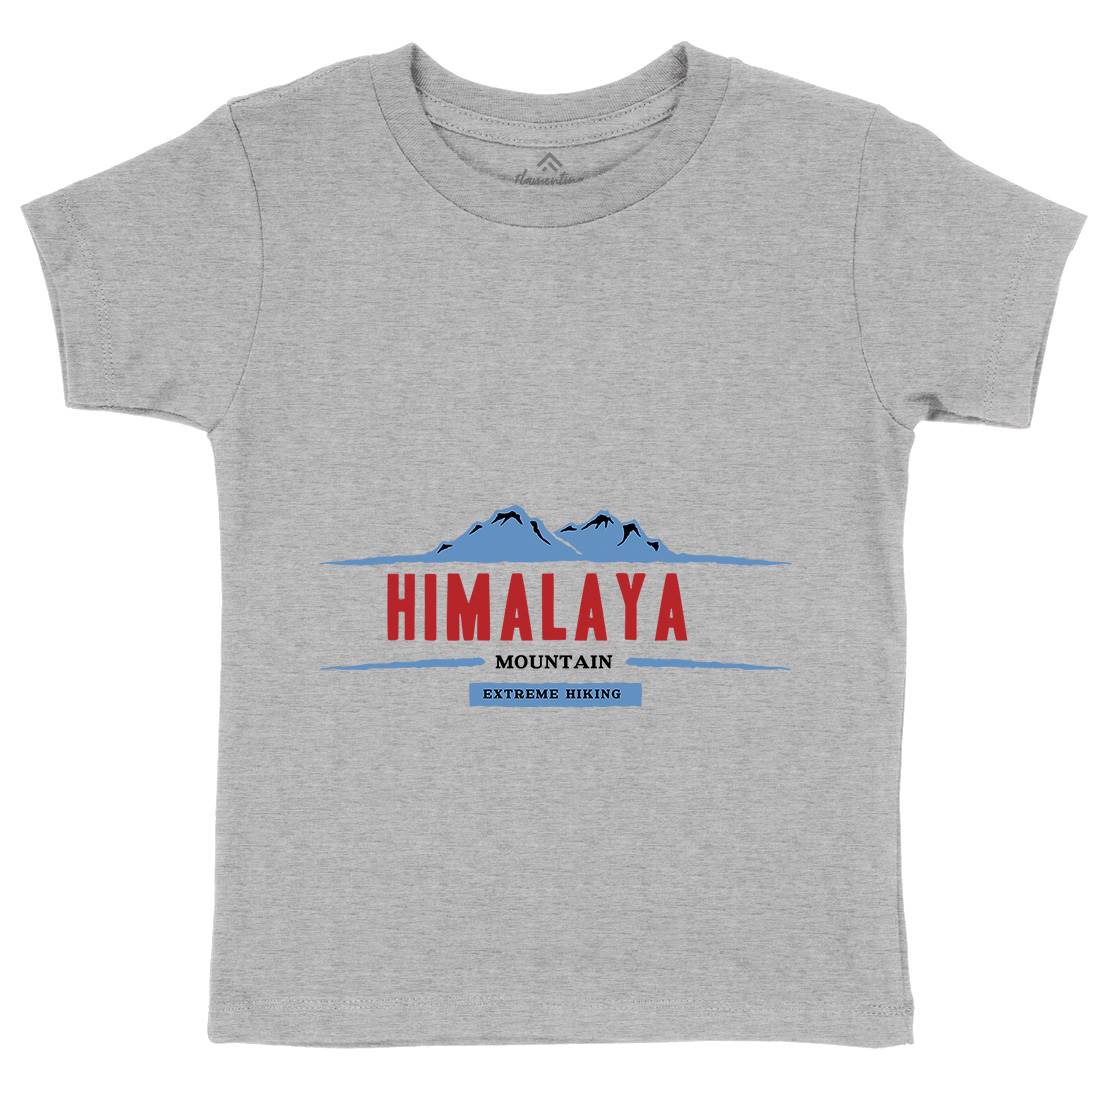 Himalaya Mountain Kids Crew Neck T-Shirt Nature A329